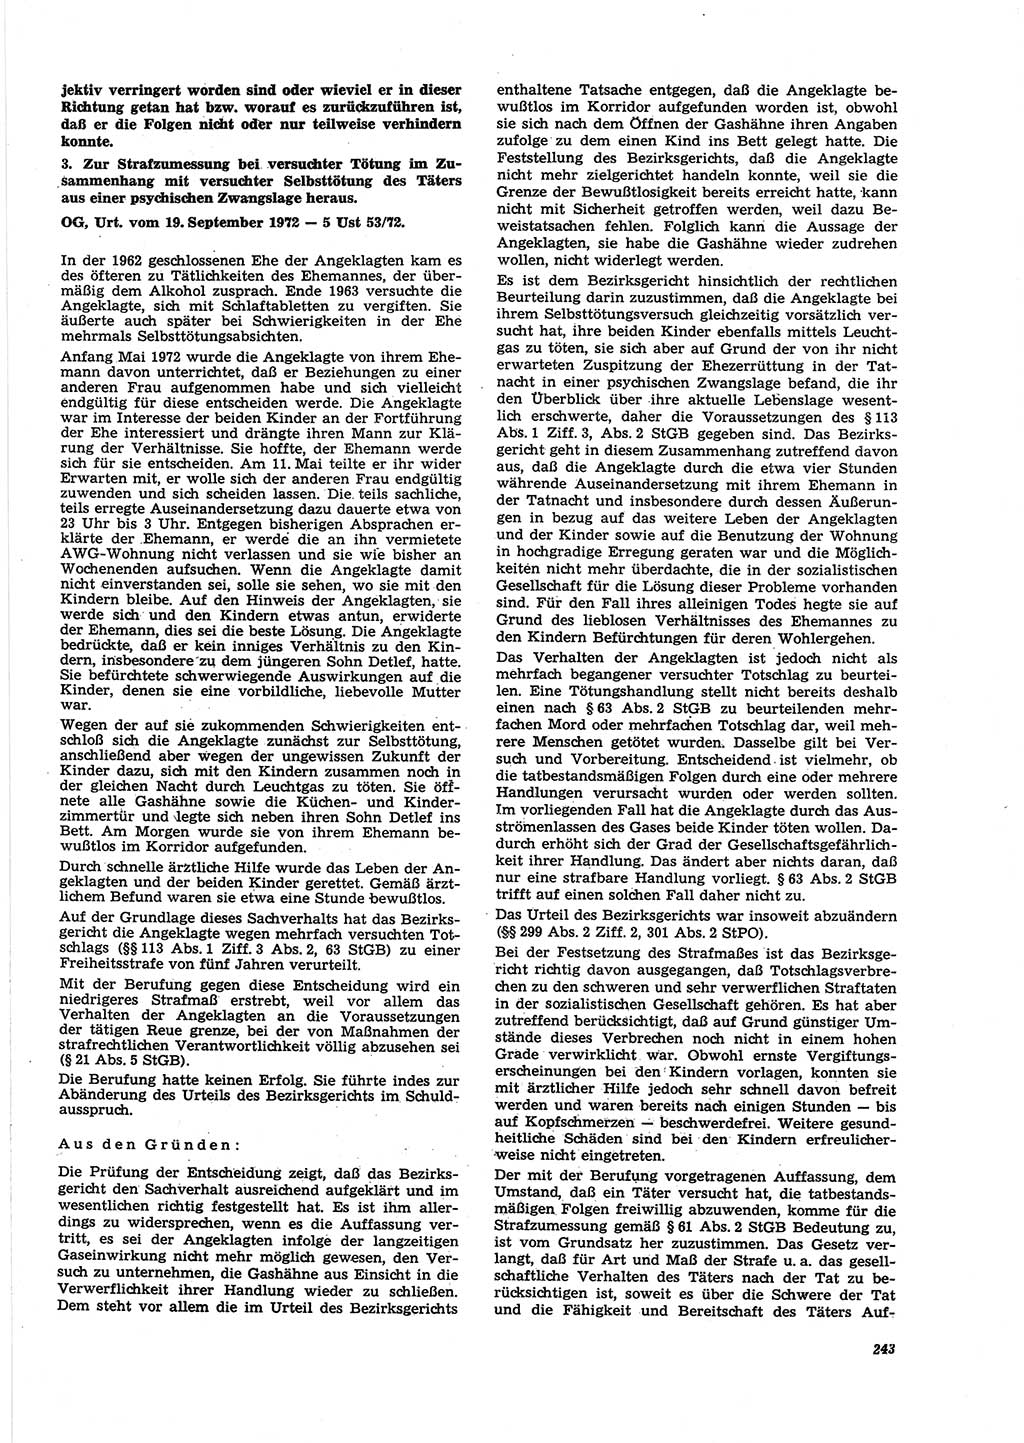 Neue Justiz (NJ), Zeitschrift für Recht und Rechtswissenschaft [Deutsche Demokratische Republik (DDR)], 27. Jahrgang 1973, Seite 243 (NJ DDR 1973, S. 243)